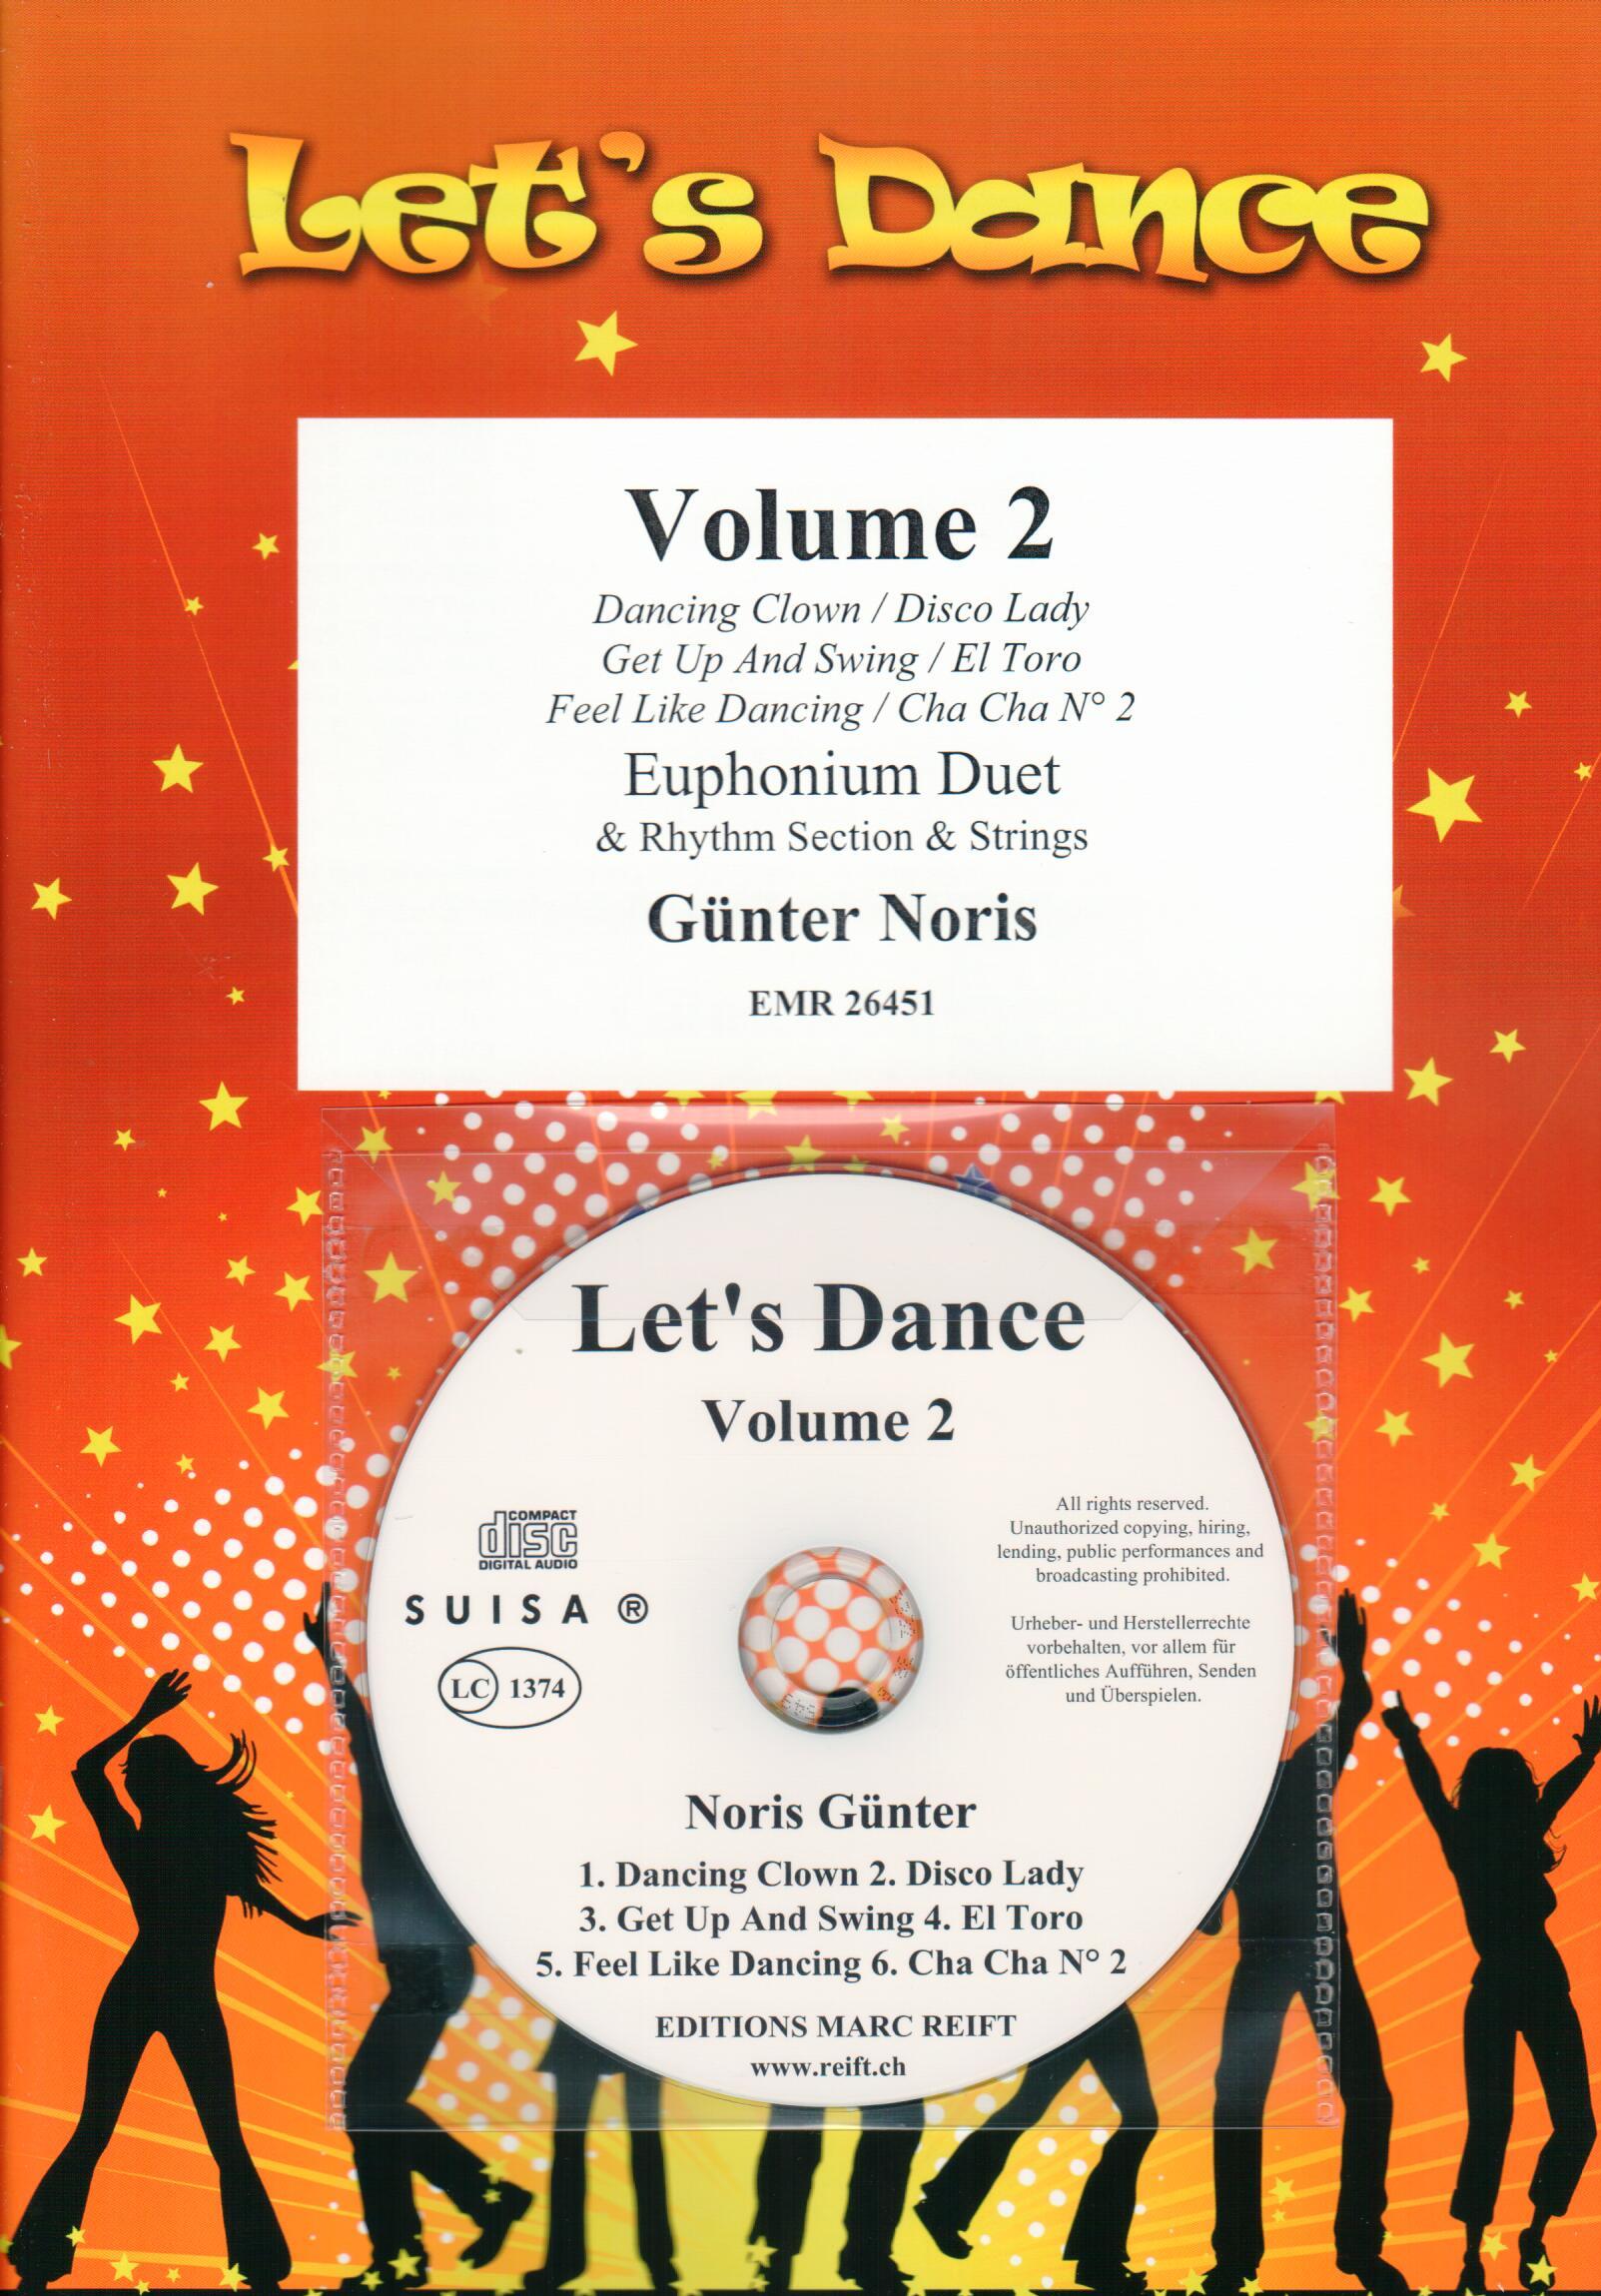 LET'S DANCE VOLUME 2, SOLOS - Euphonium